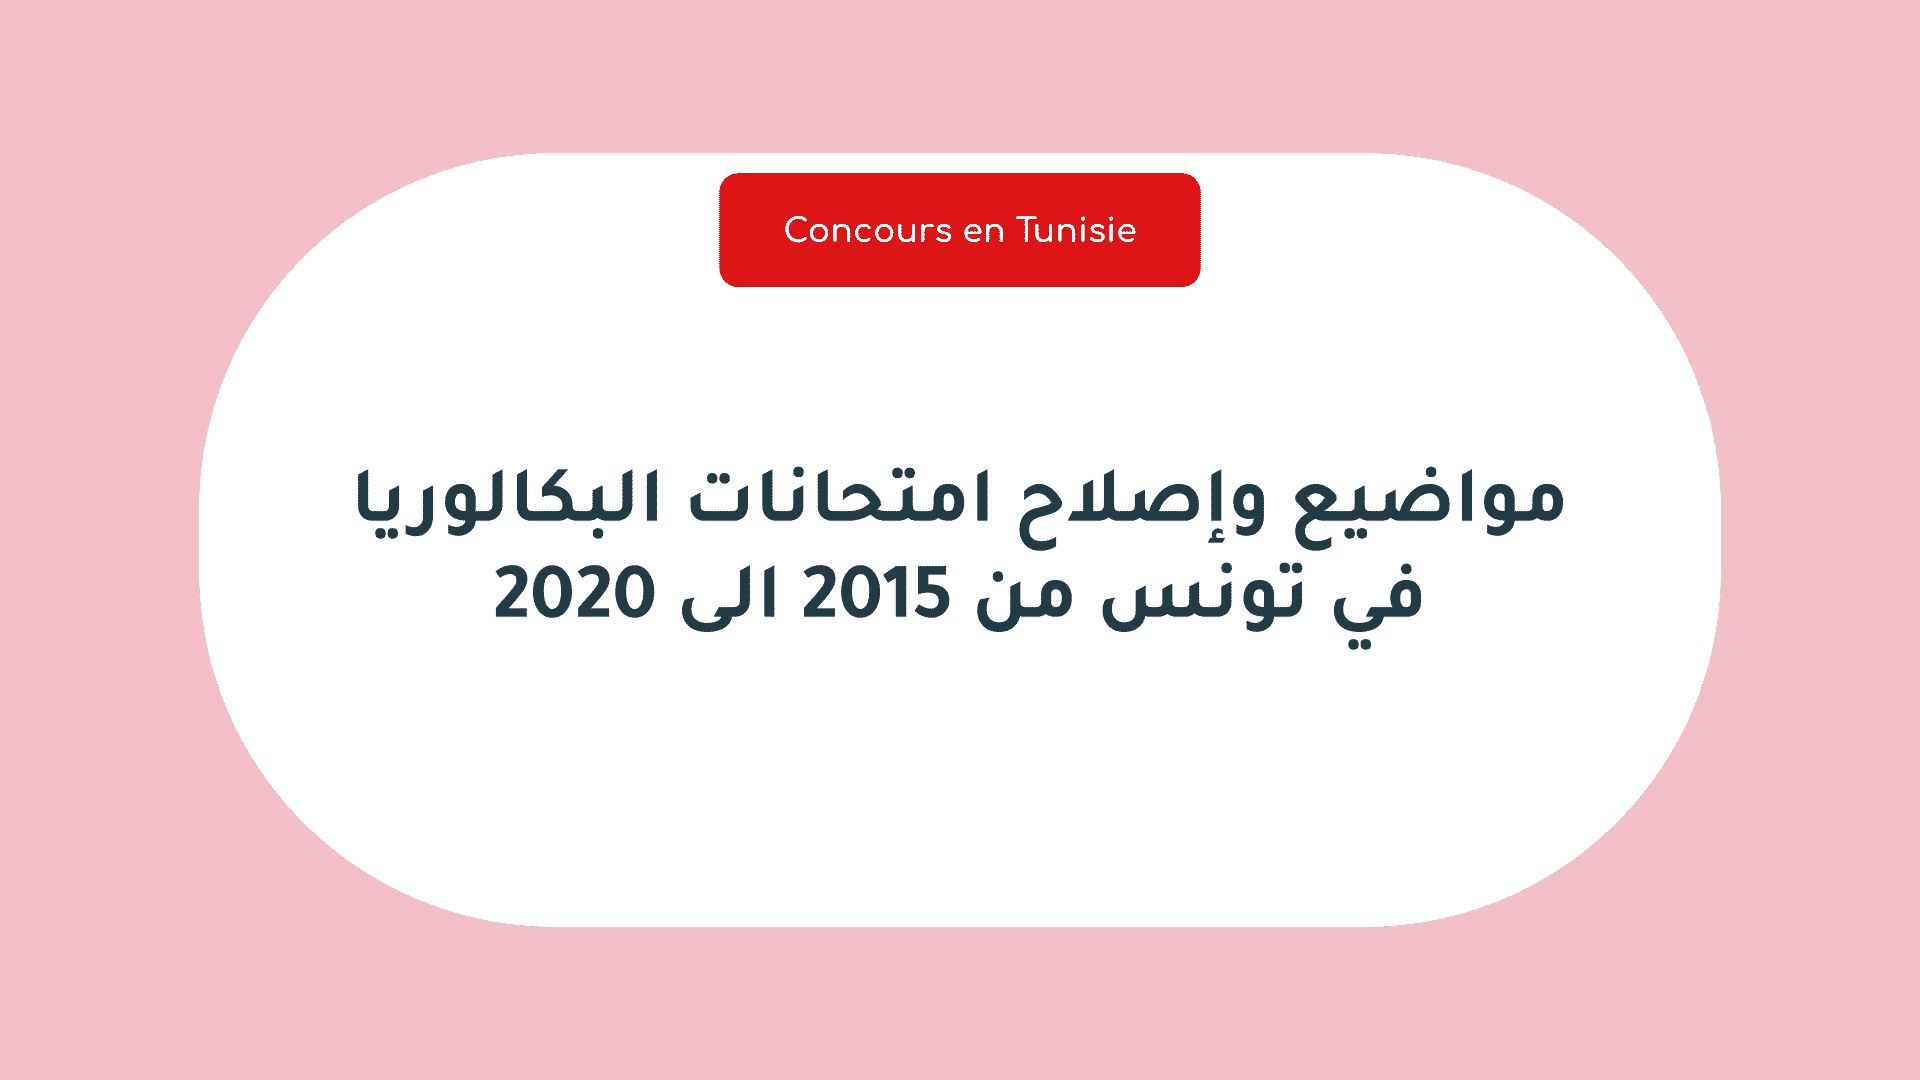 مواضيع وإصلاح امتحانات البكالوريا في تونس من 2015 الى 2020